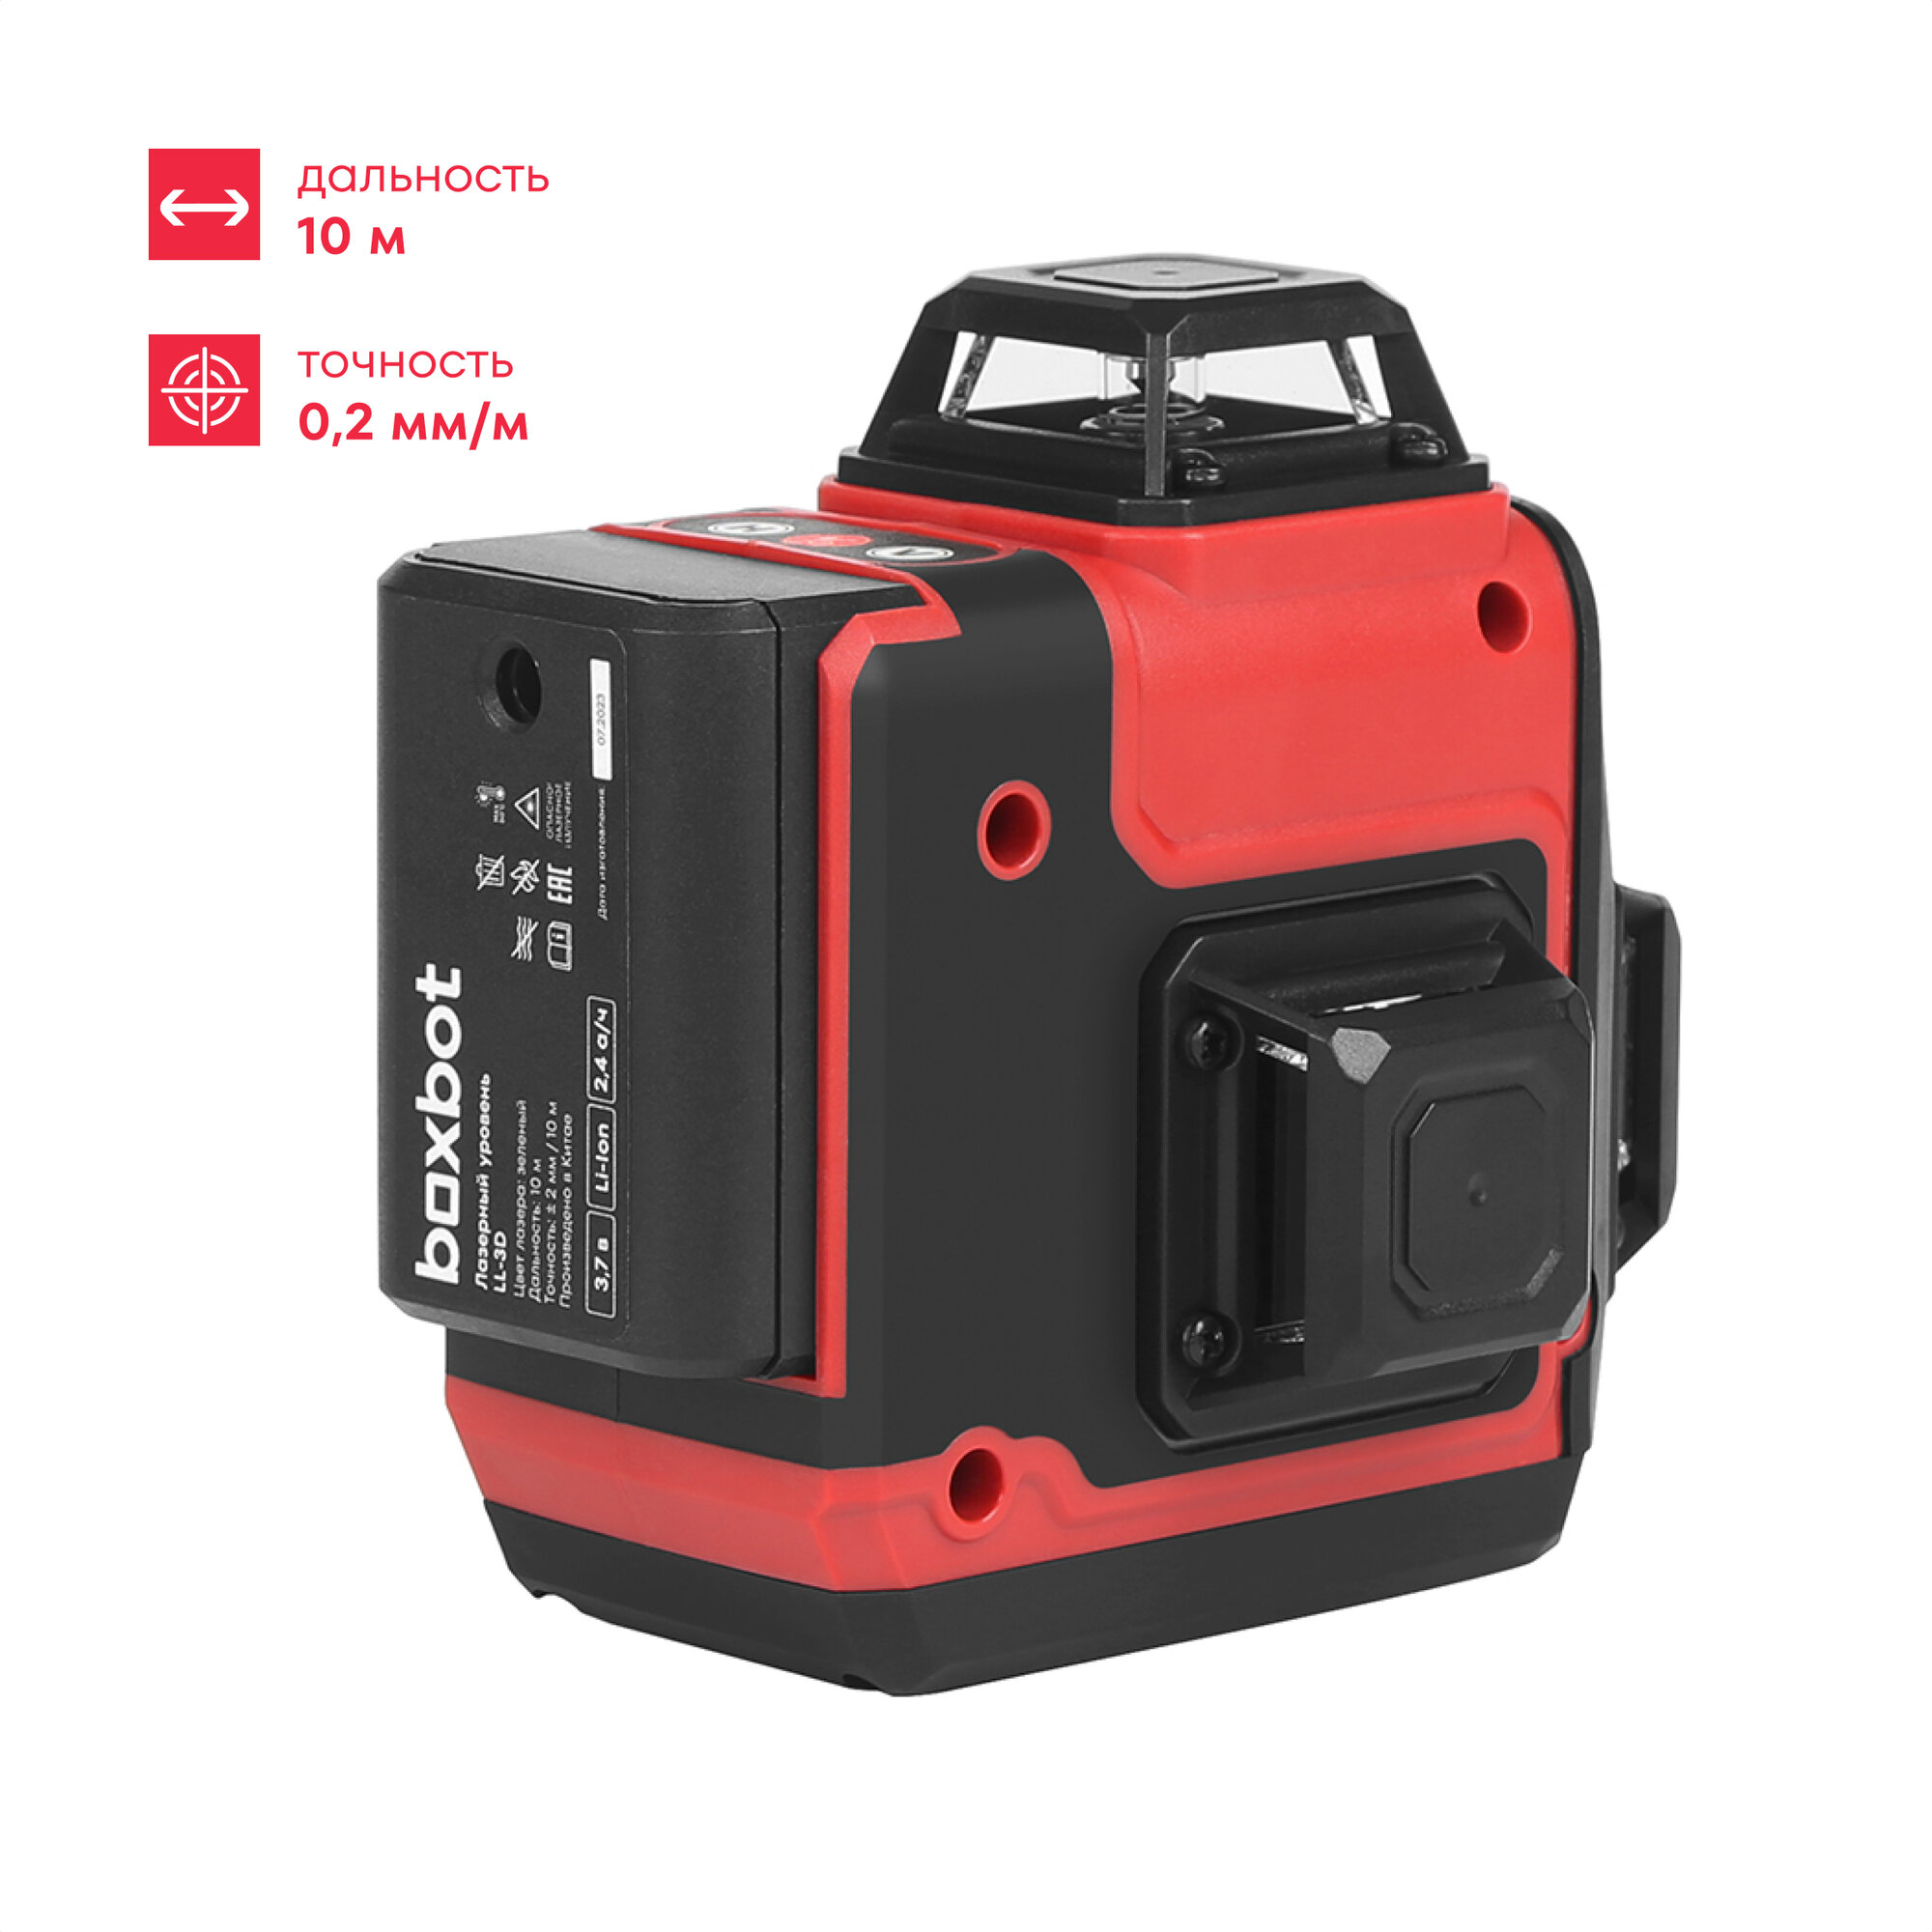 Уровень лазерный Boxbot, 3х360, без аксессуаров в сумке, зеленый луч, LL-3D